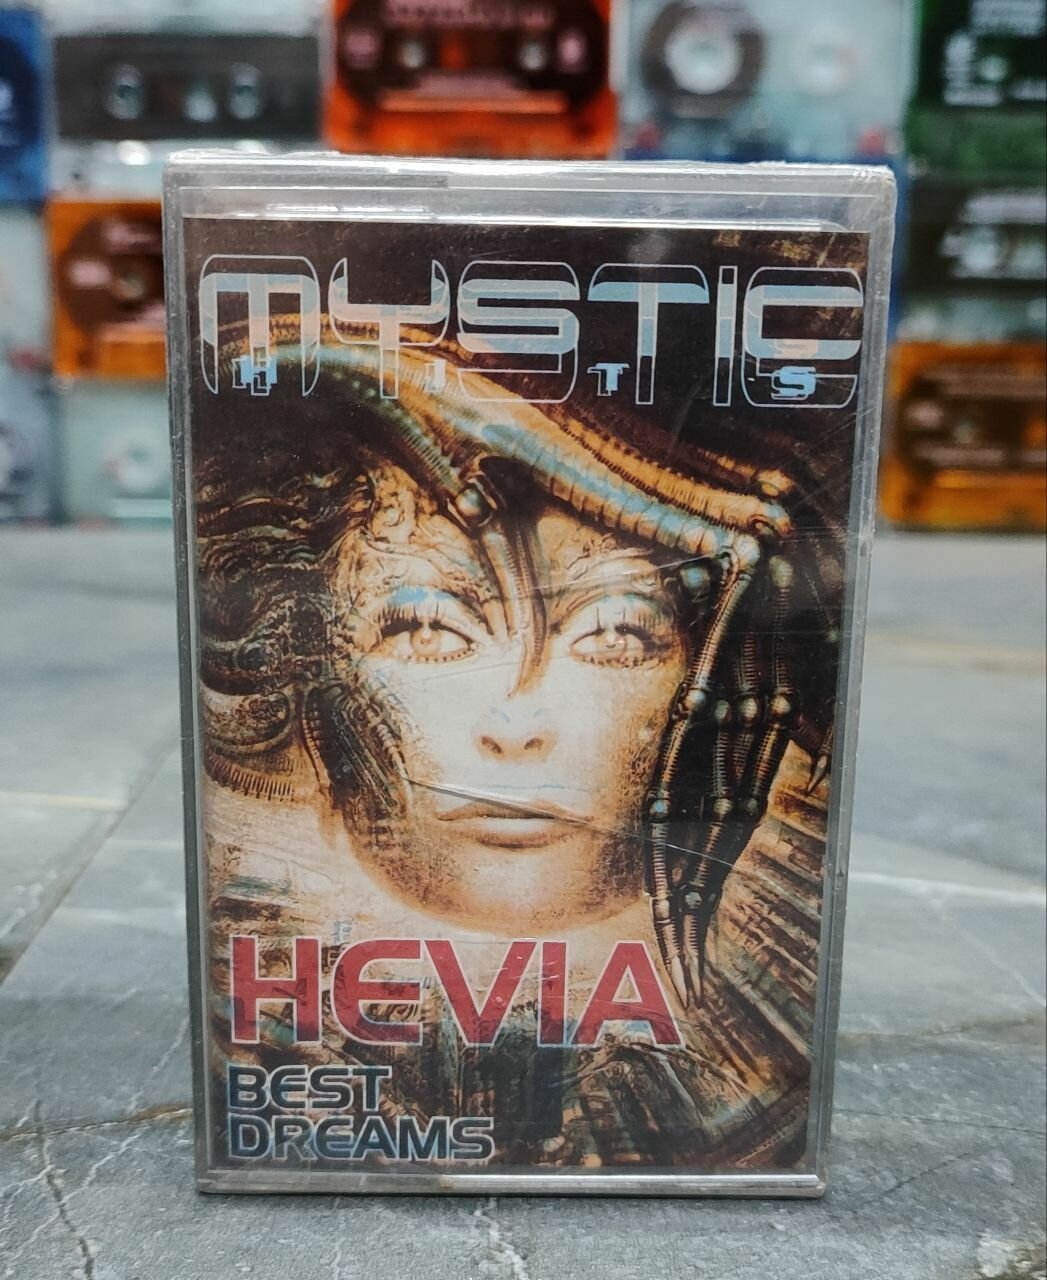 Hevia Mystic Hits (Best Dreams), аудиокассета, кассета (МС), 2001, оригинал